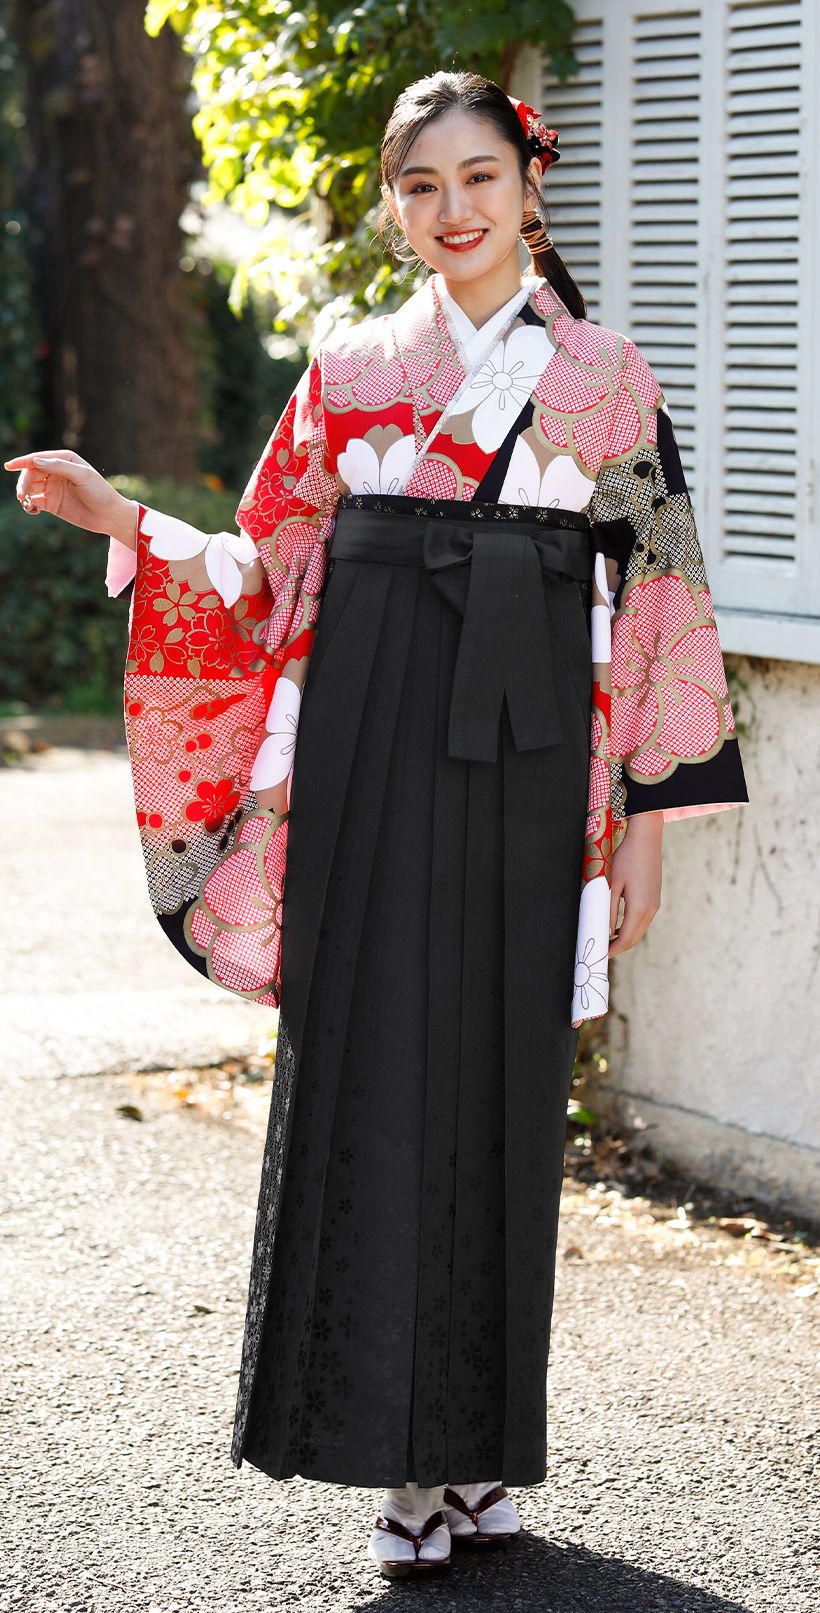 レンタル袴&着物 「赤 市松レトロ花」&「黒 麻の葉桜柄」 | 小振袖